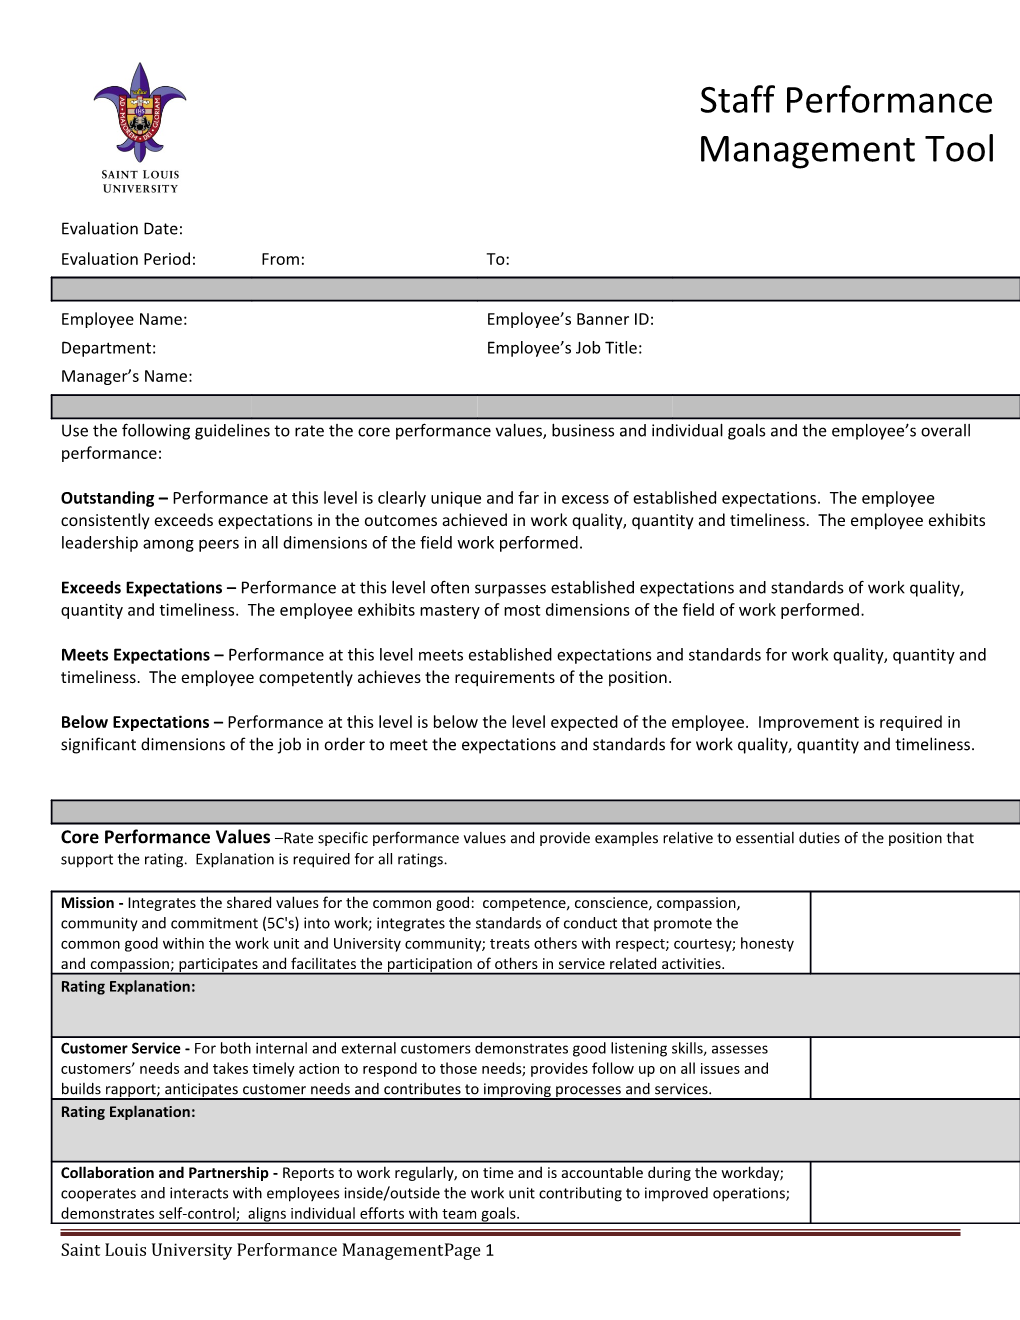 Saint Louis University Performance Management Page 1